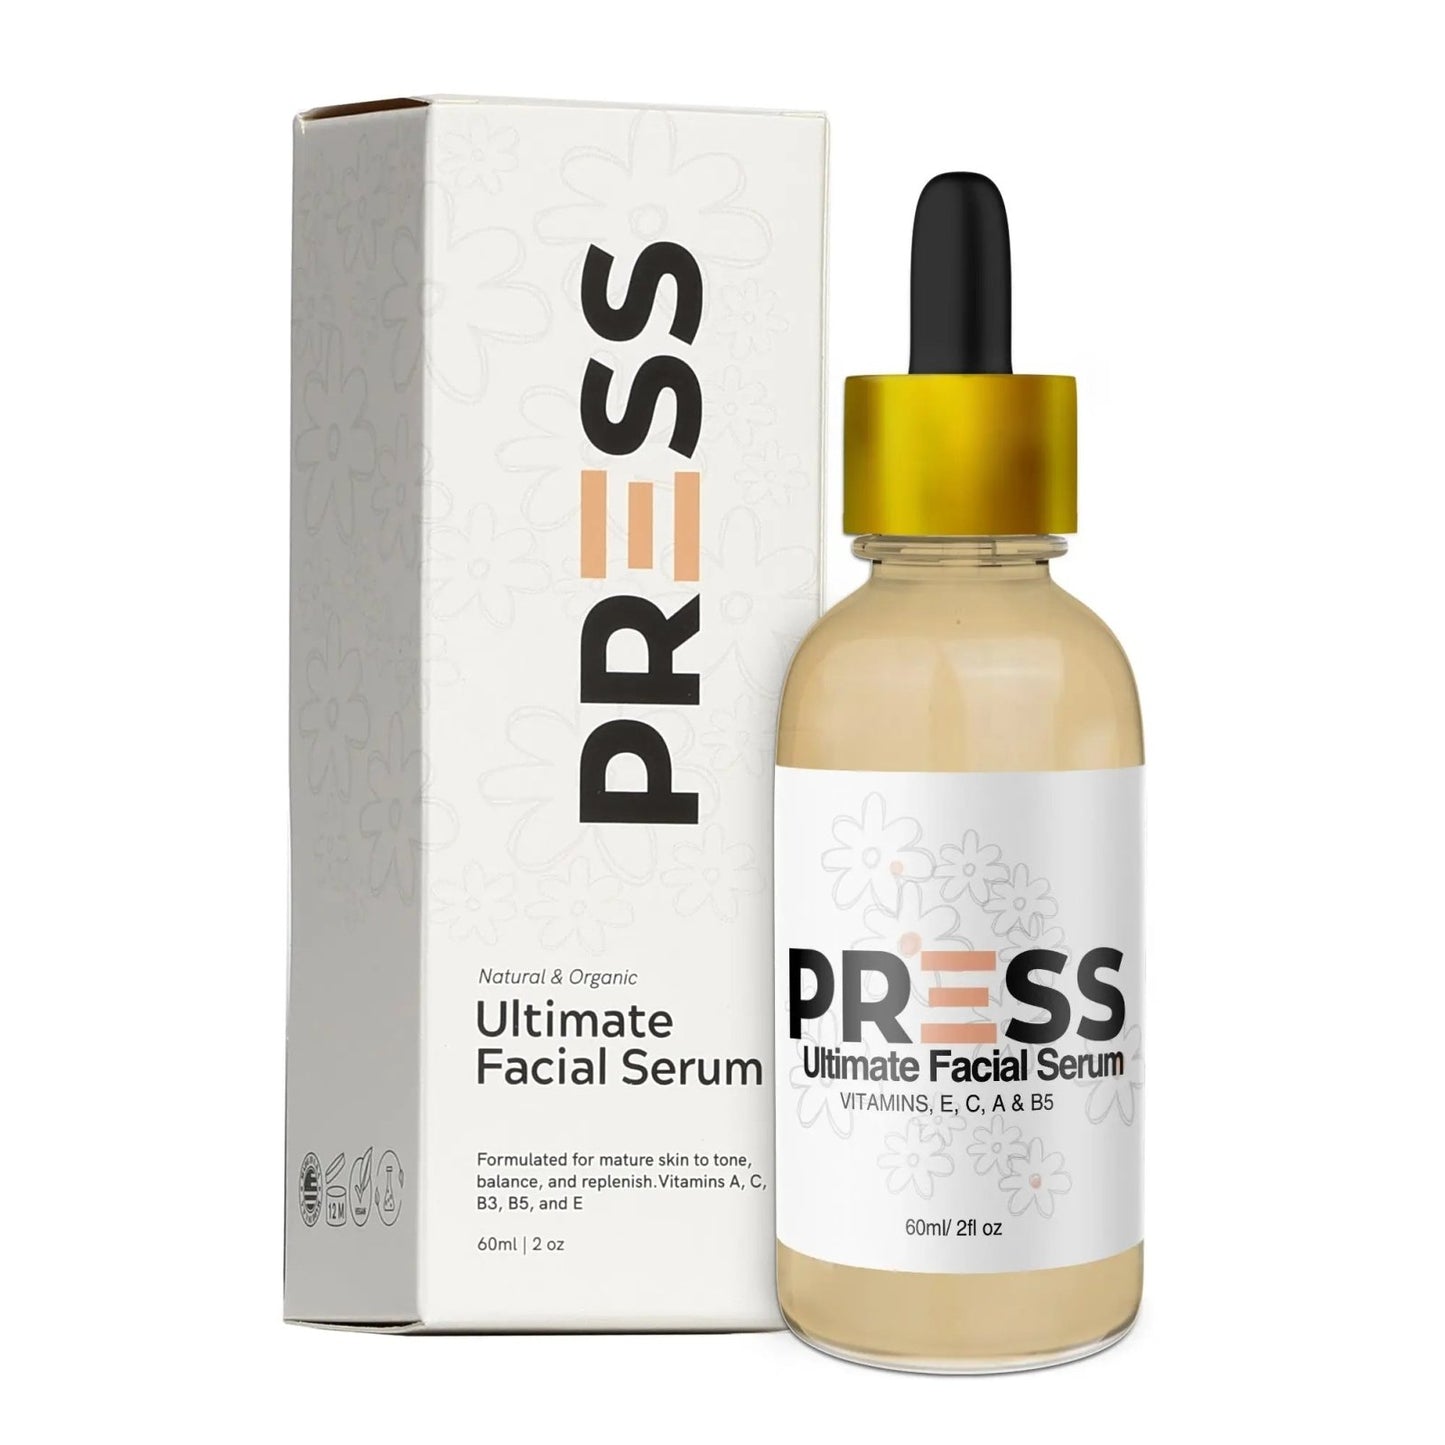 Ultimate Facial Serum 2 oz Press Skin Care